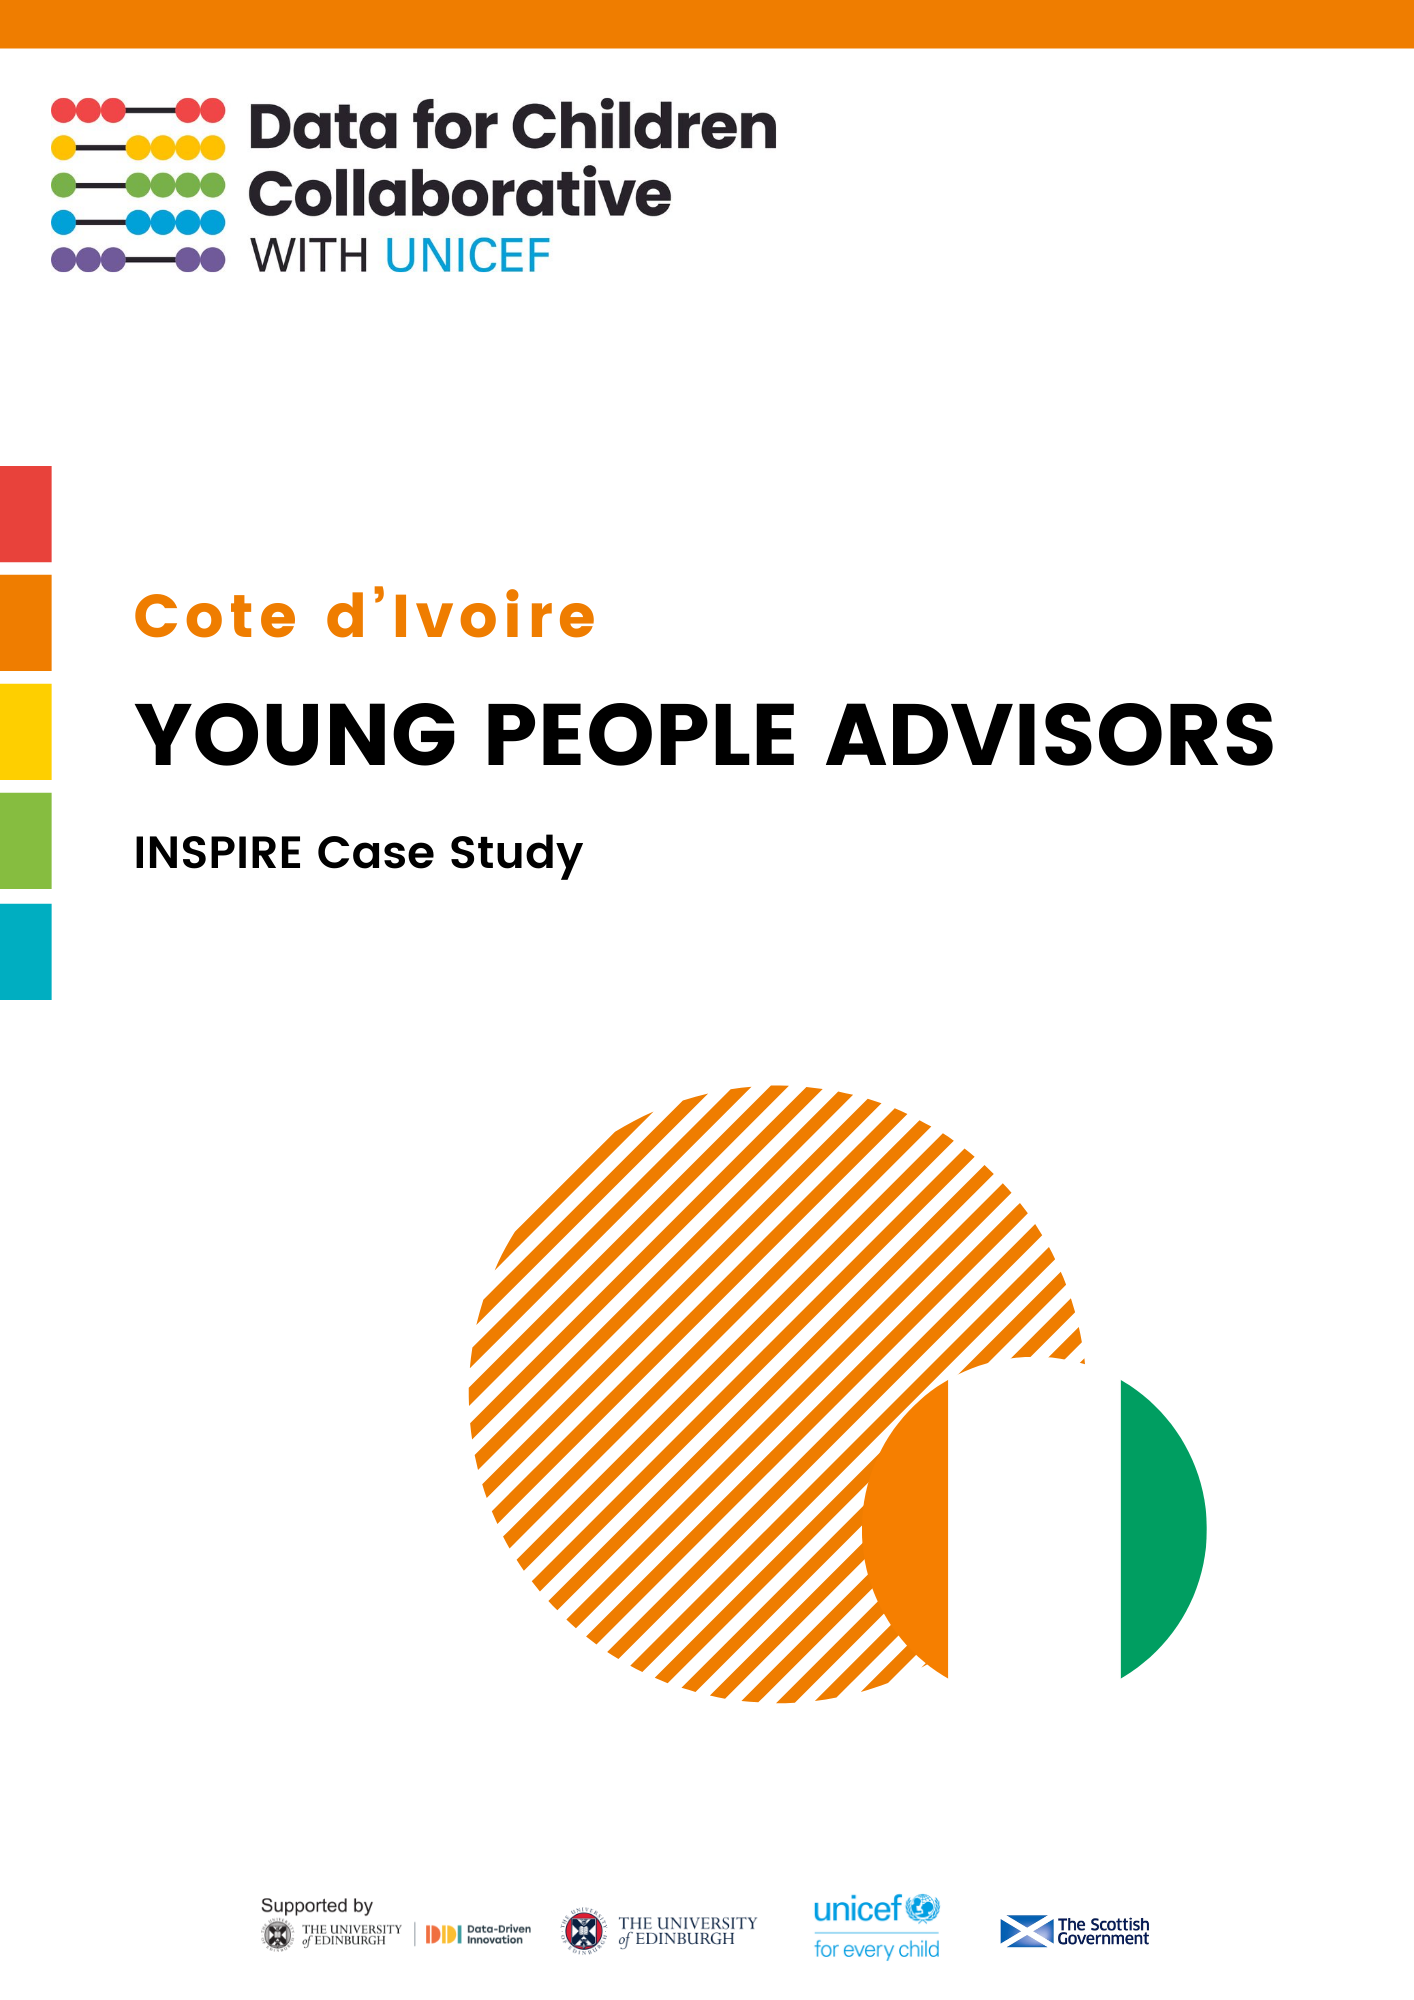 Cote d'Ivoire YPA Case Study (Copy)